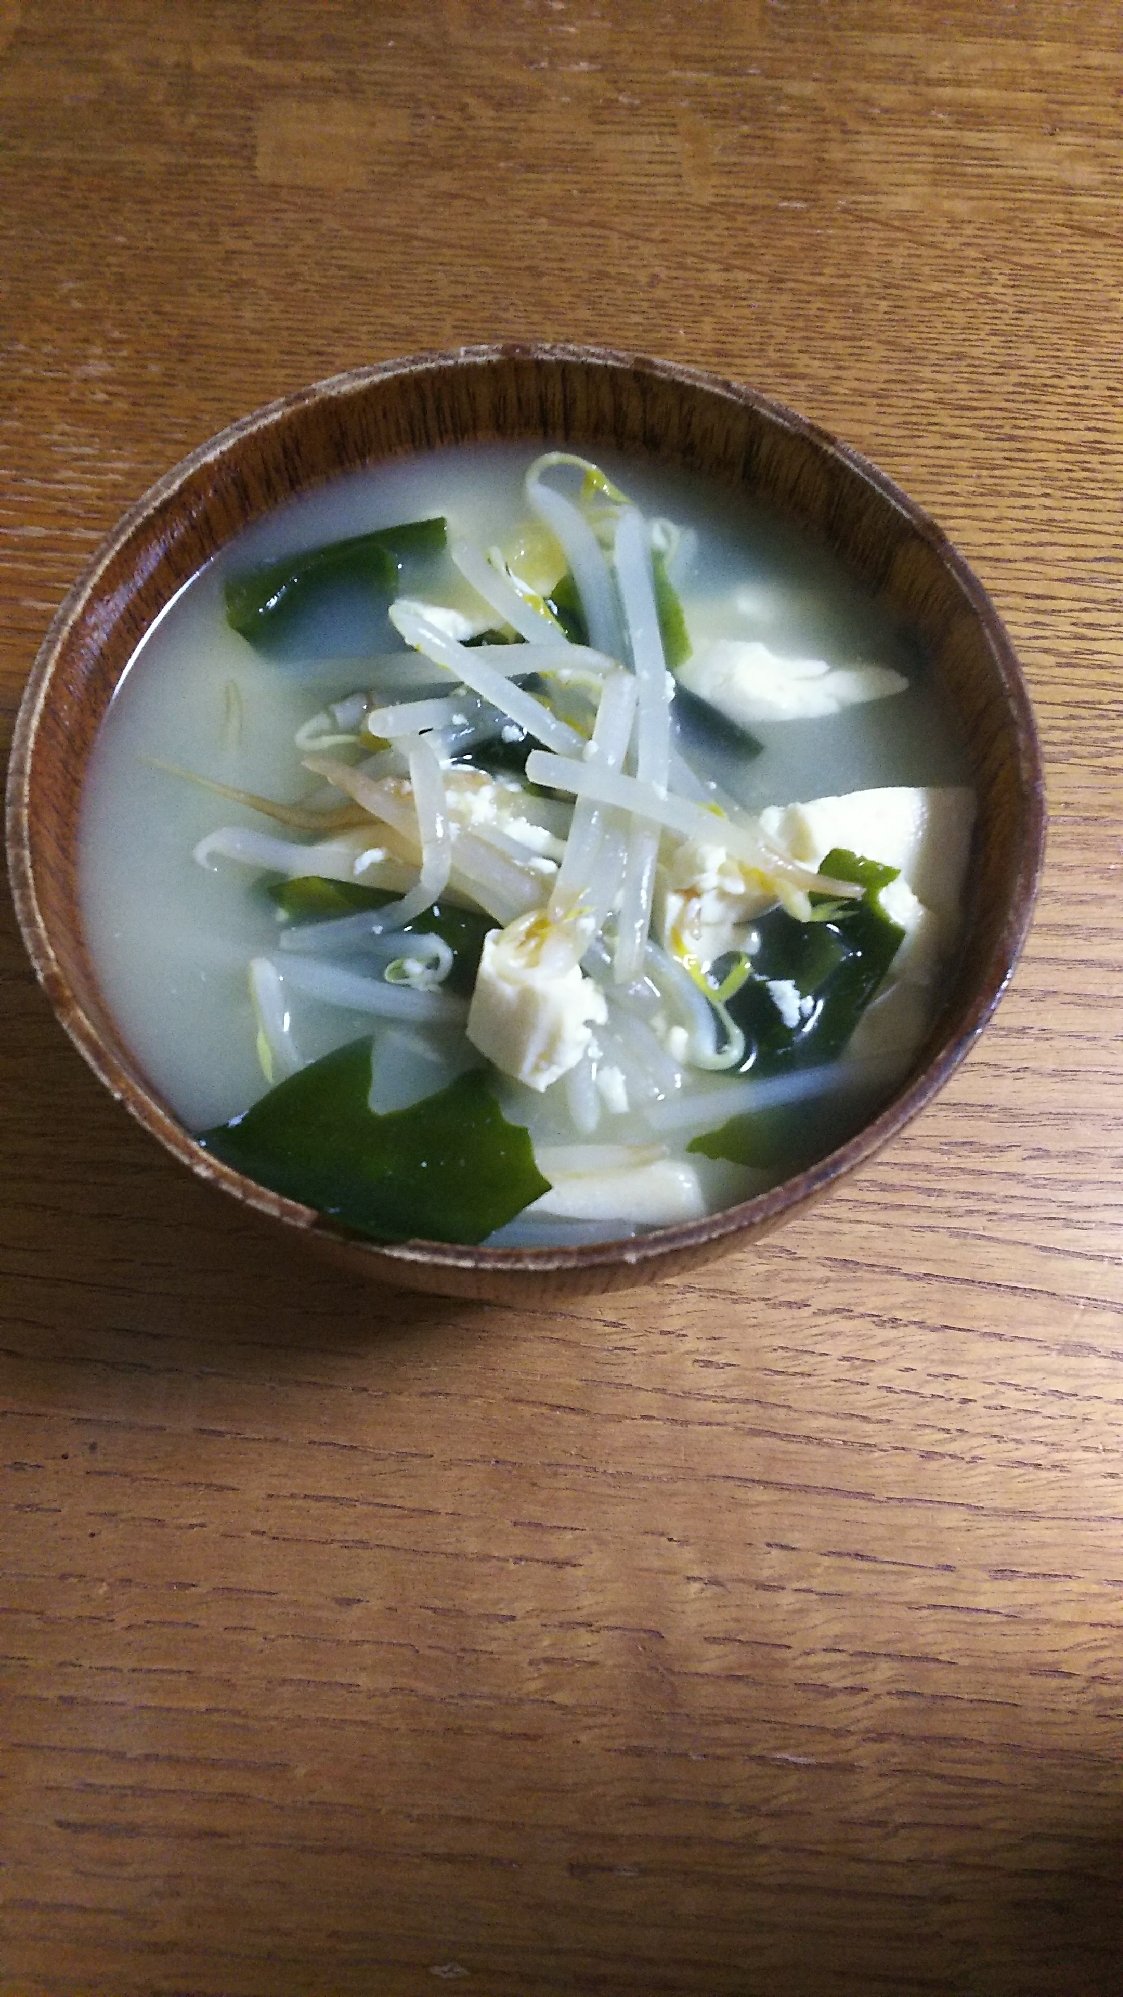 もやしとわかめの豆腐スープ